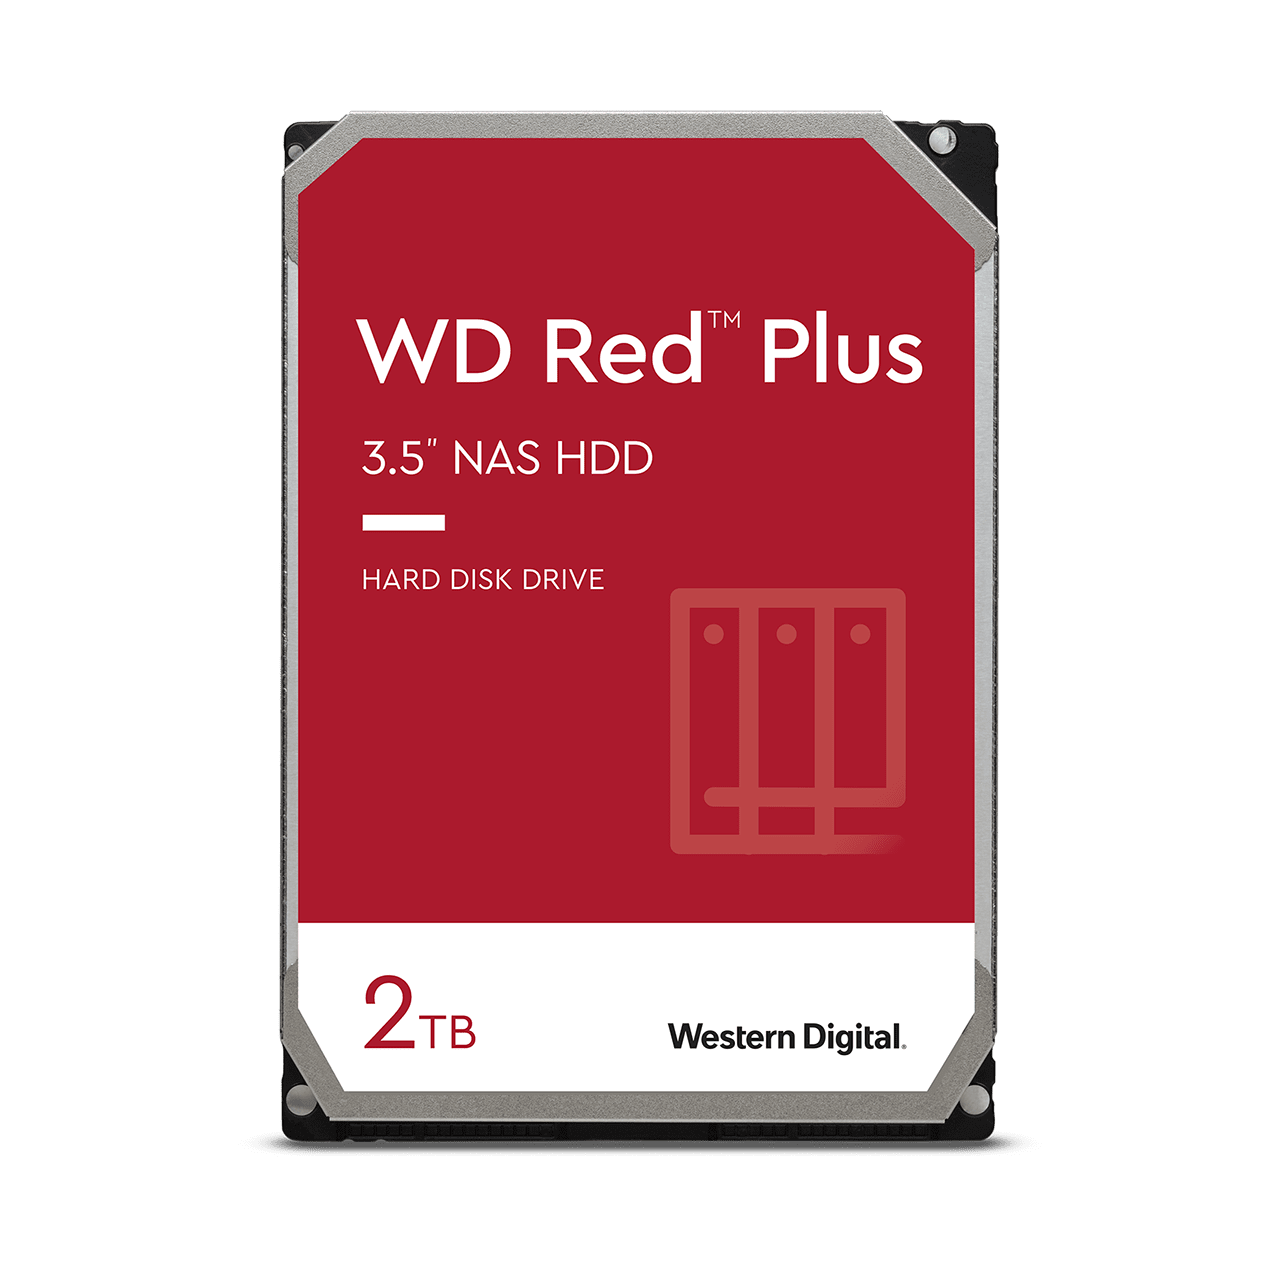 wd-red-plus-sata-3-5-hdd-2tb.thumb.1280.1280